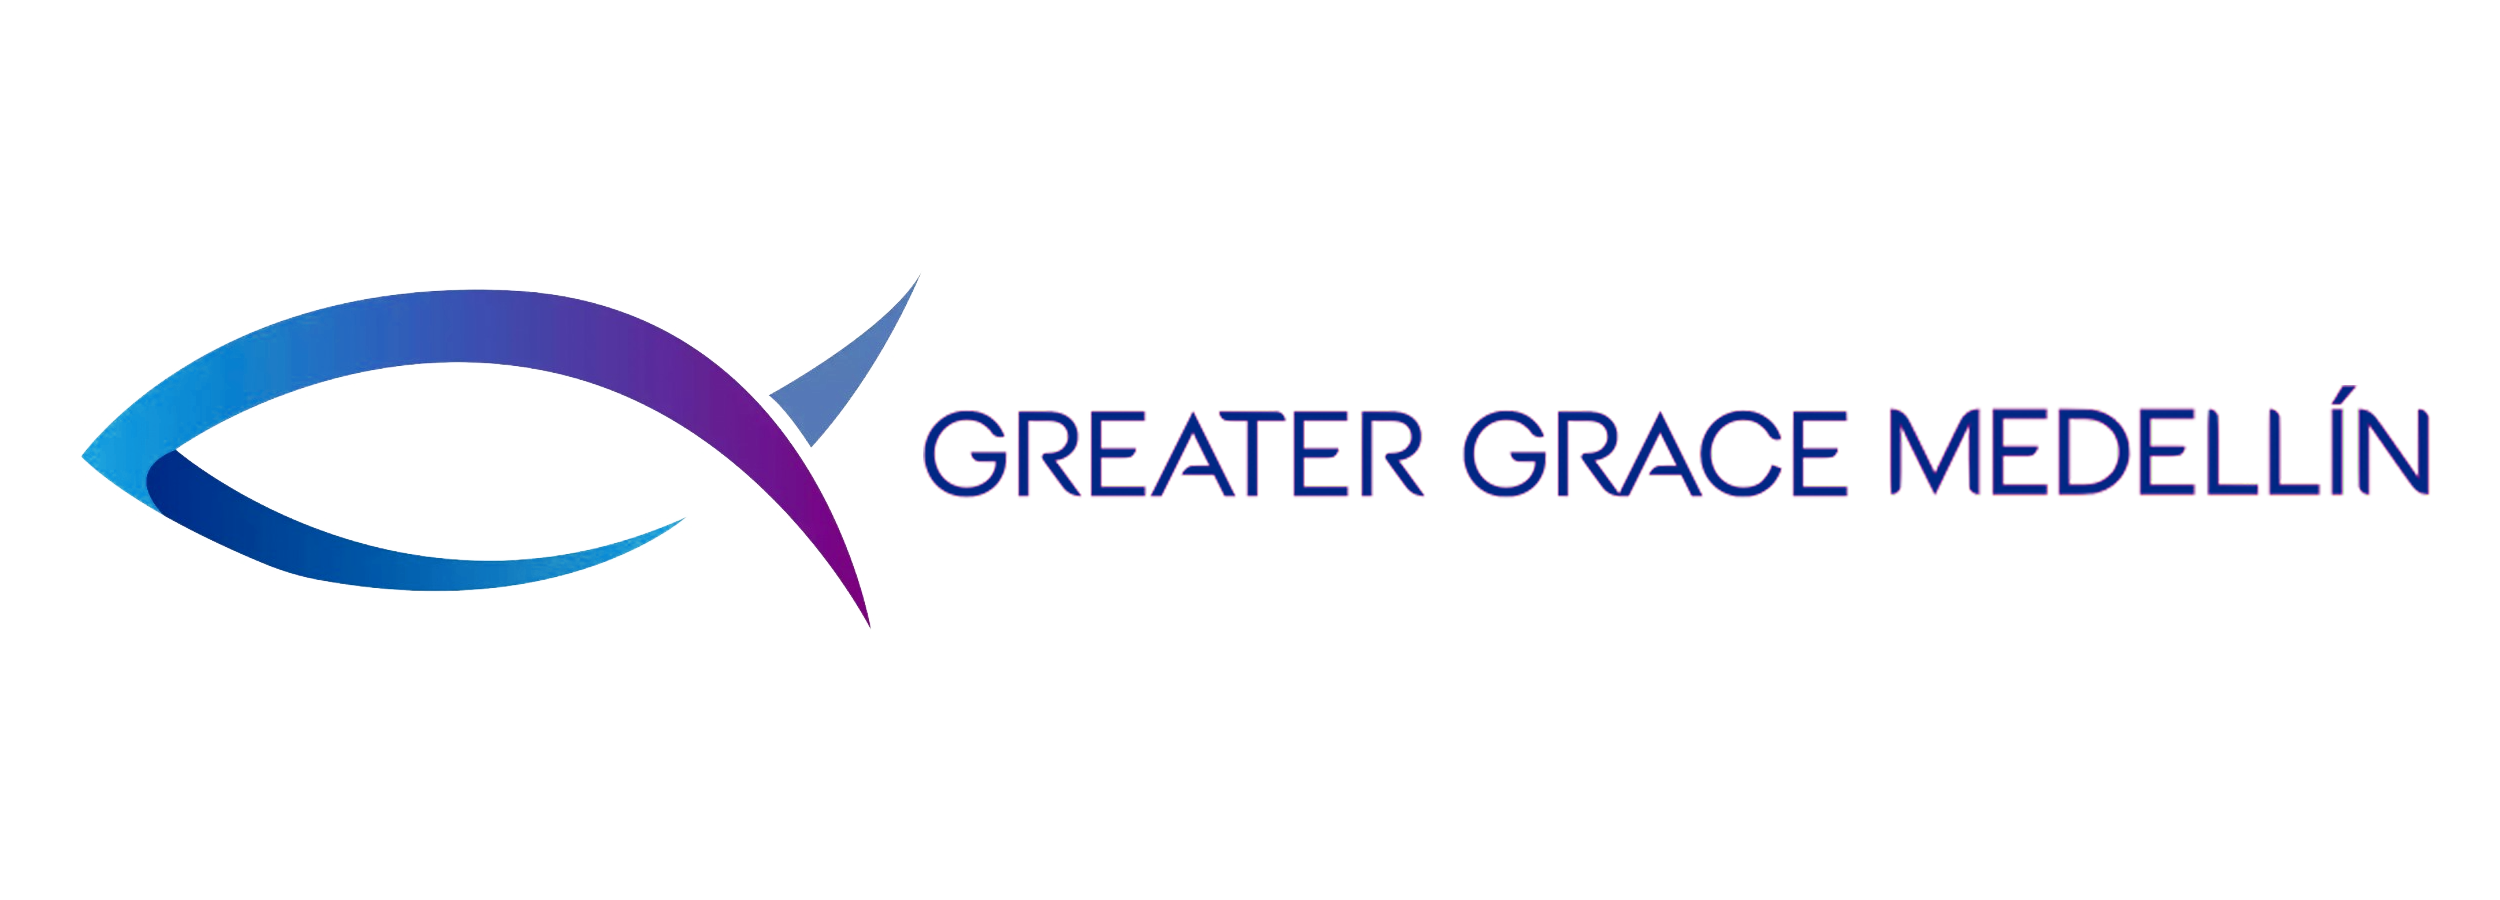 Greater Grace Medellin